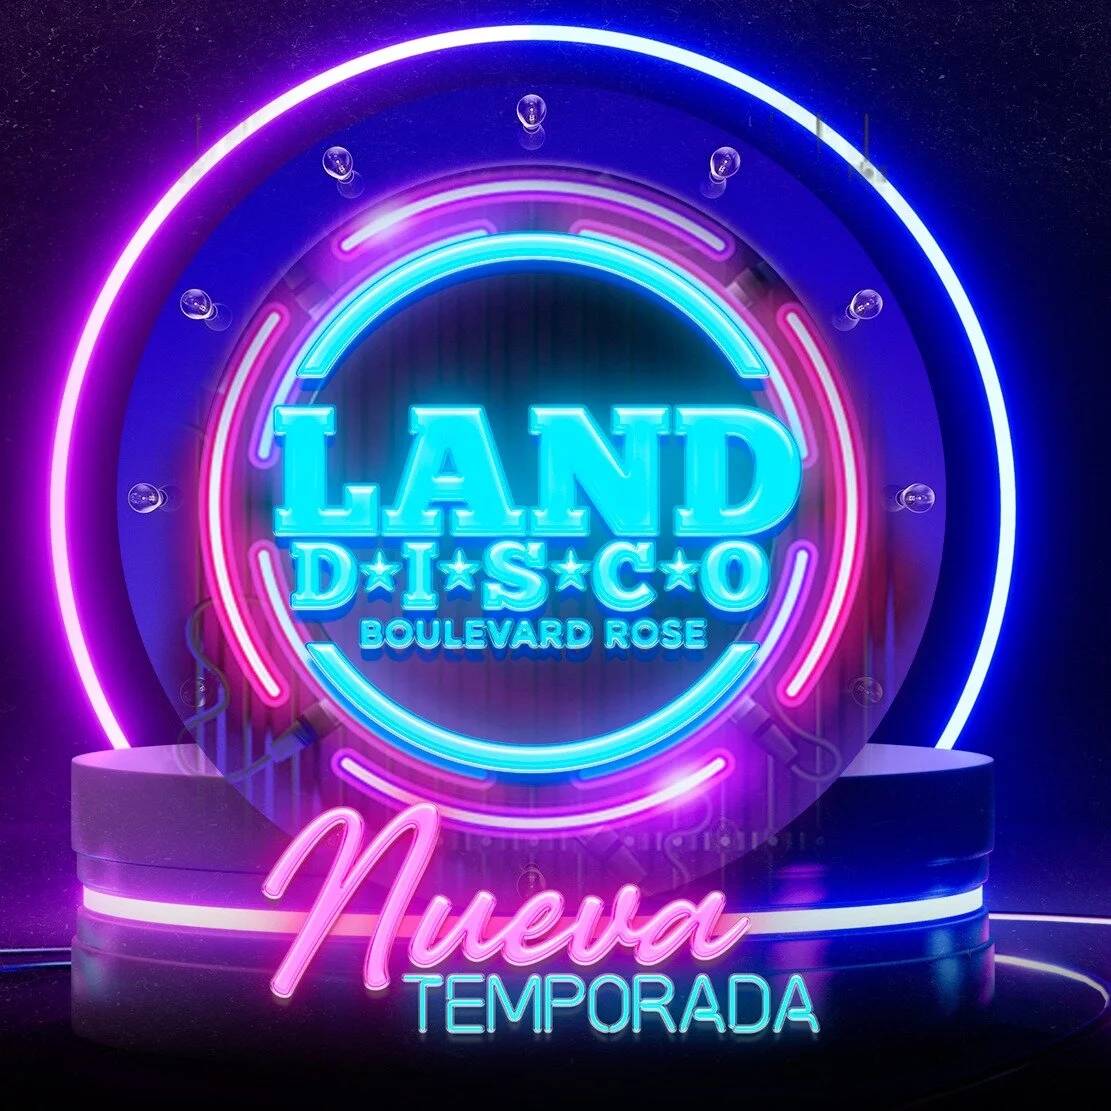 Discotecas-land-disco-32978